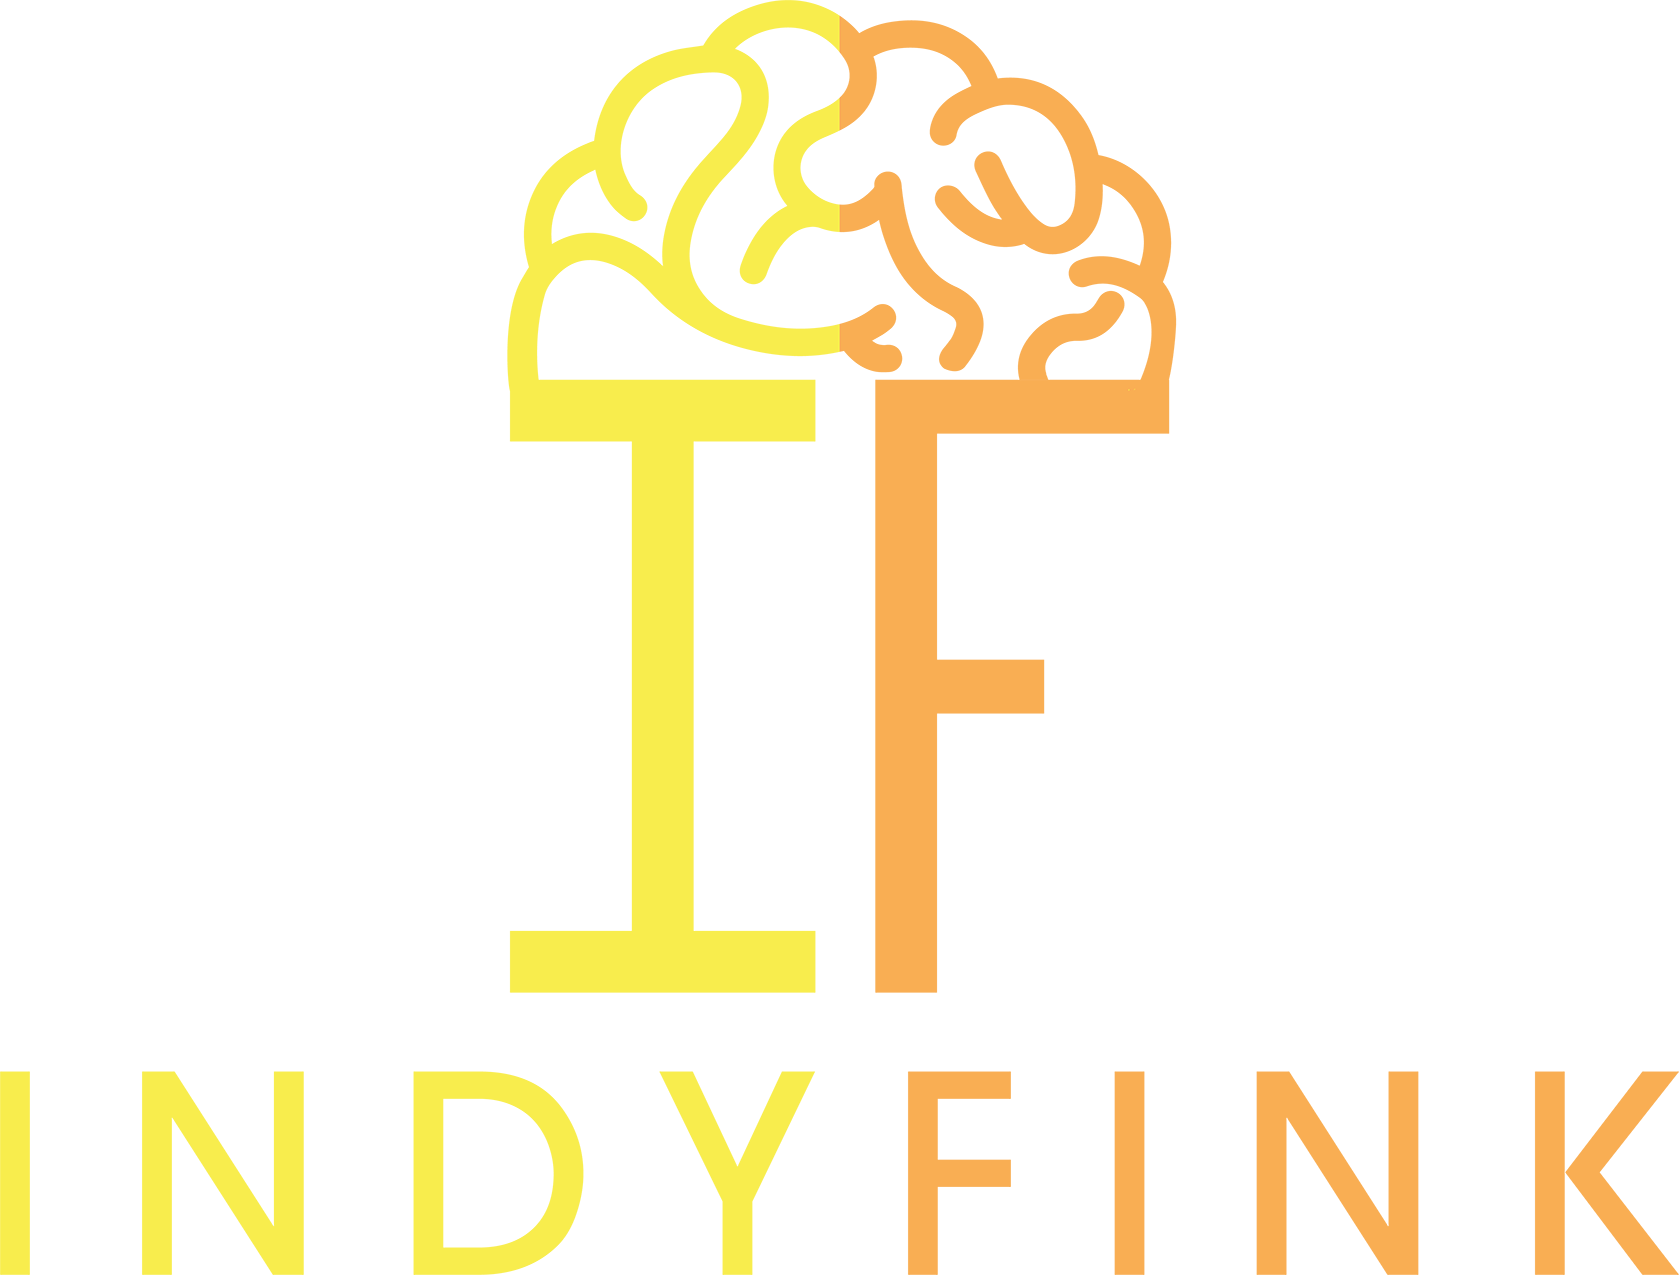 Indyfink